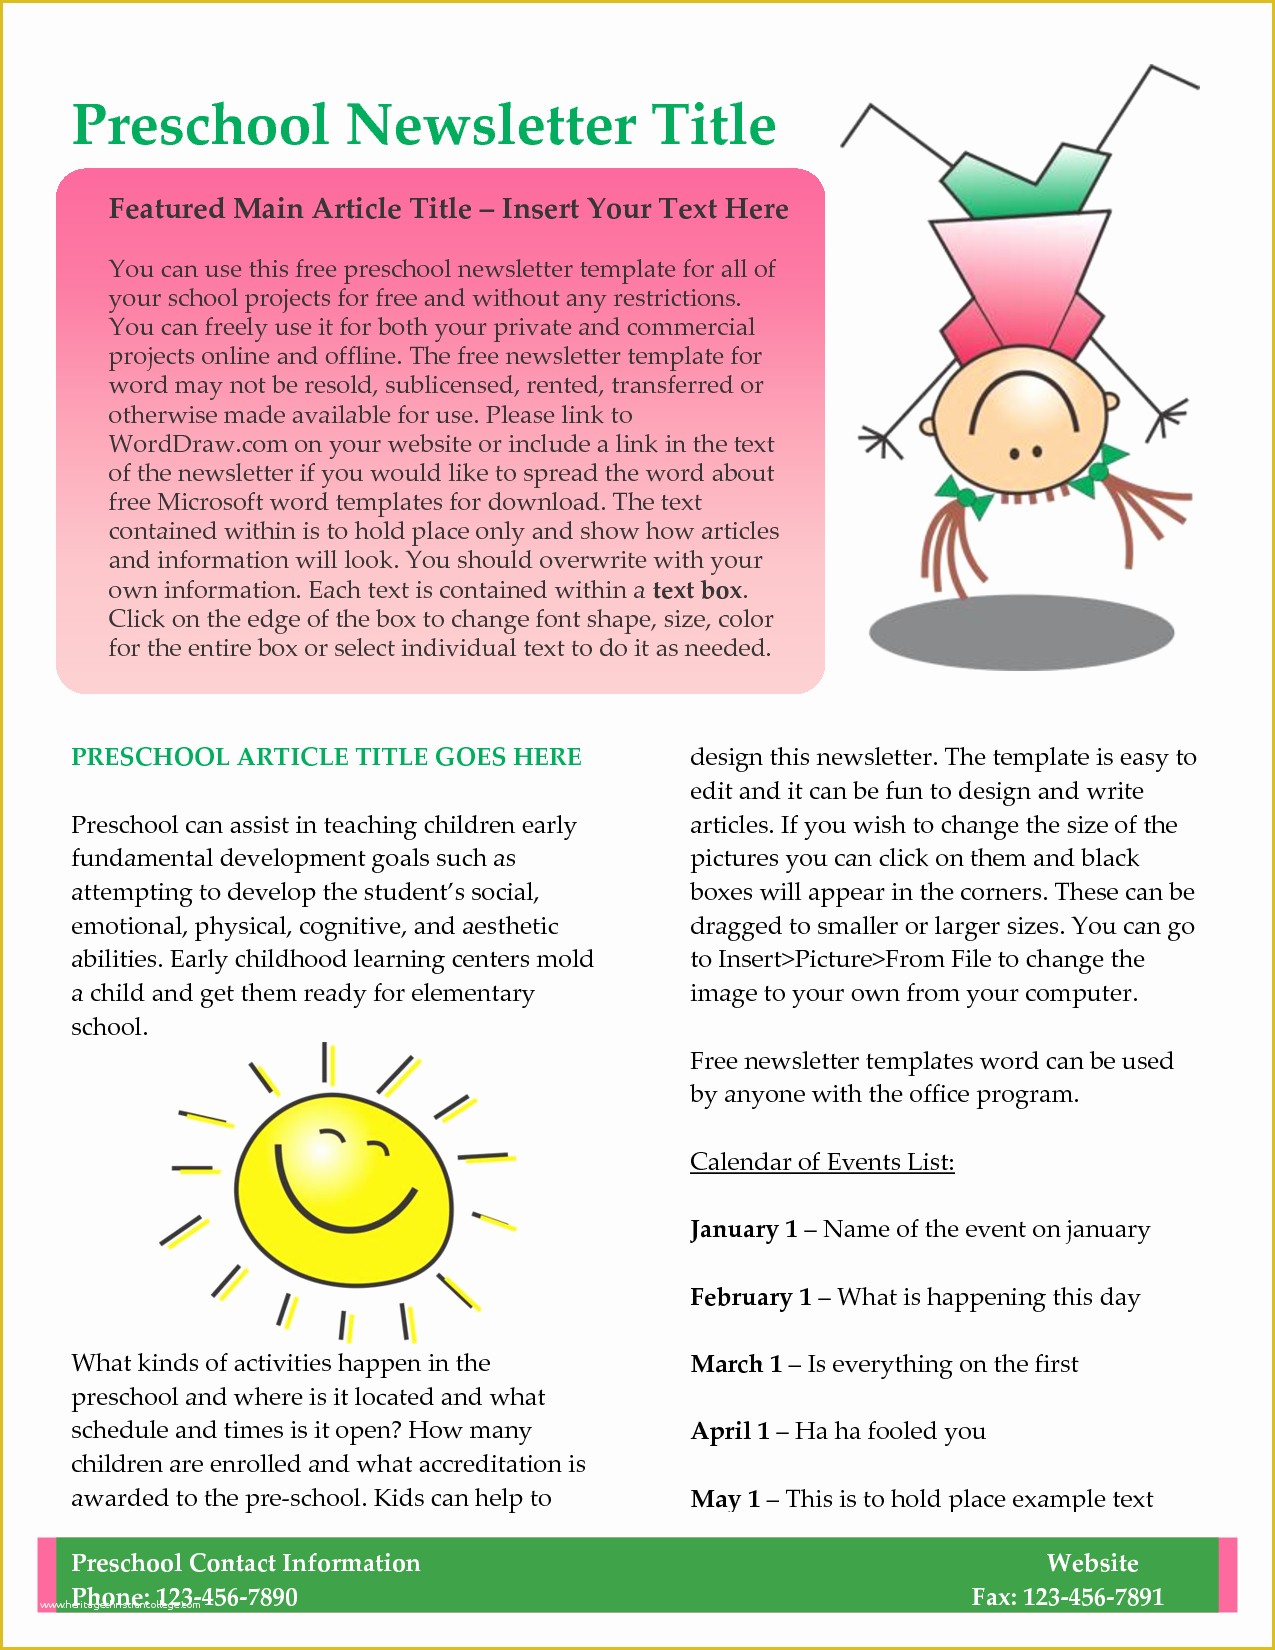 Free Downloadable Preschool Newsletter Templates Of 10 Best Of Newsletter Template Free Business